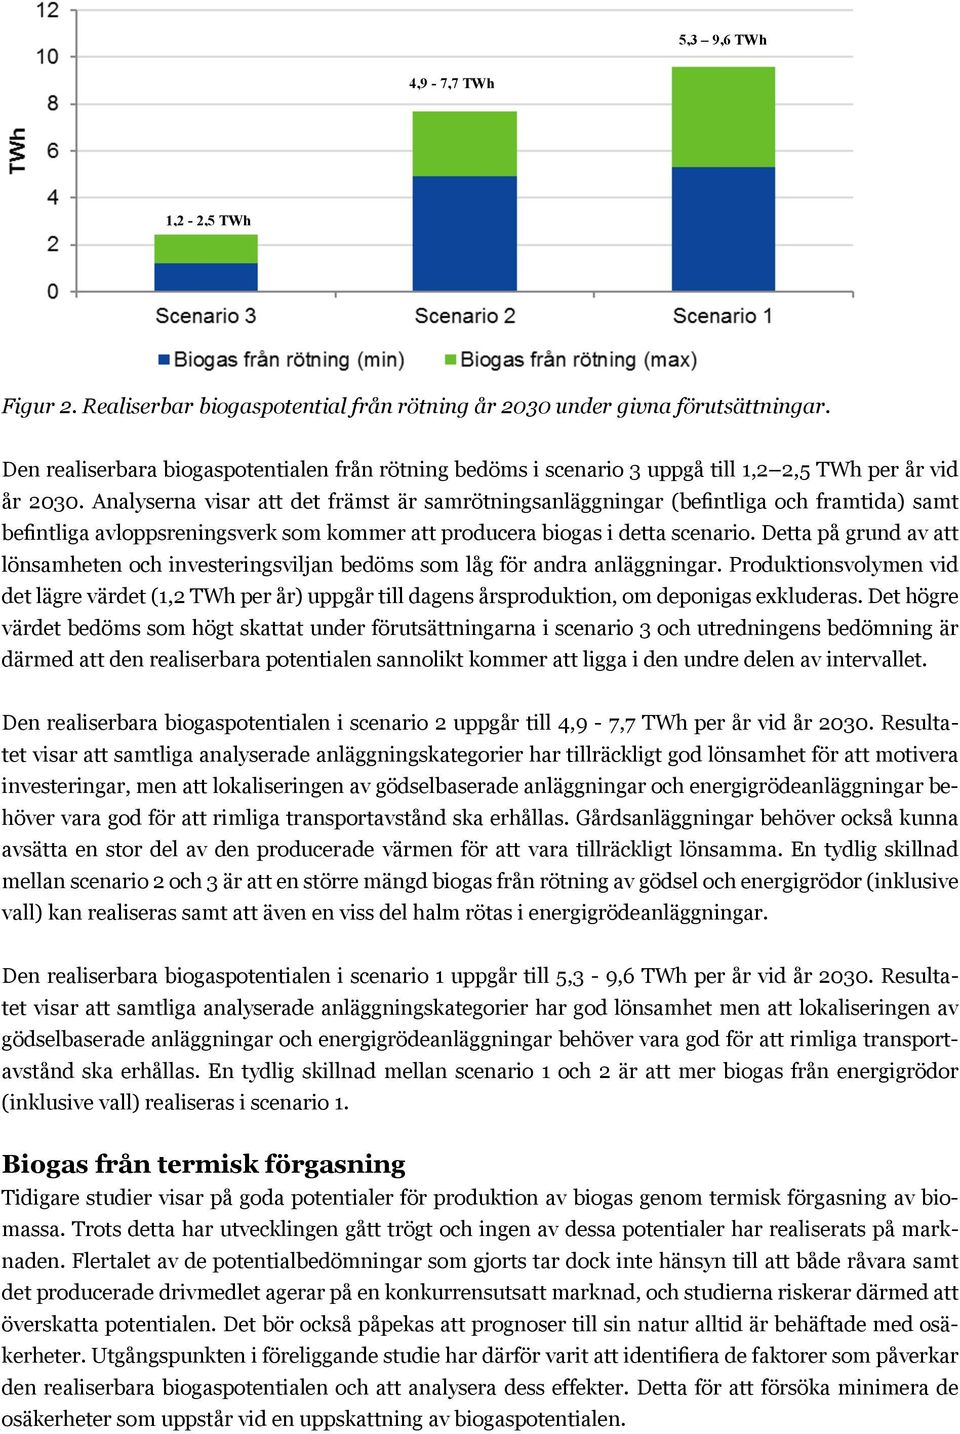 5,3 9,6 TWh 4,9-7,7 TWh 1,2-2,5 TWh Figur Figur 2. Realiserbar 2. Realiserbar biogaspotential biogaspotential från rötning från år rötning 2030 under år givna 2030 förutsättningar.